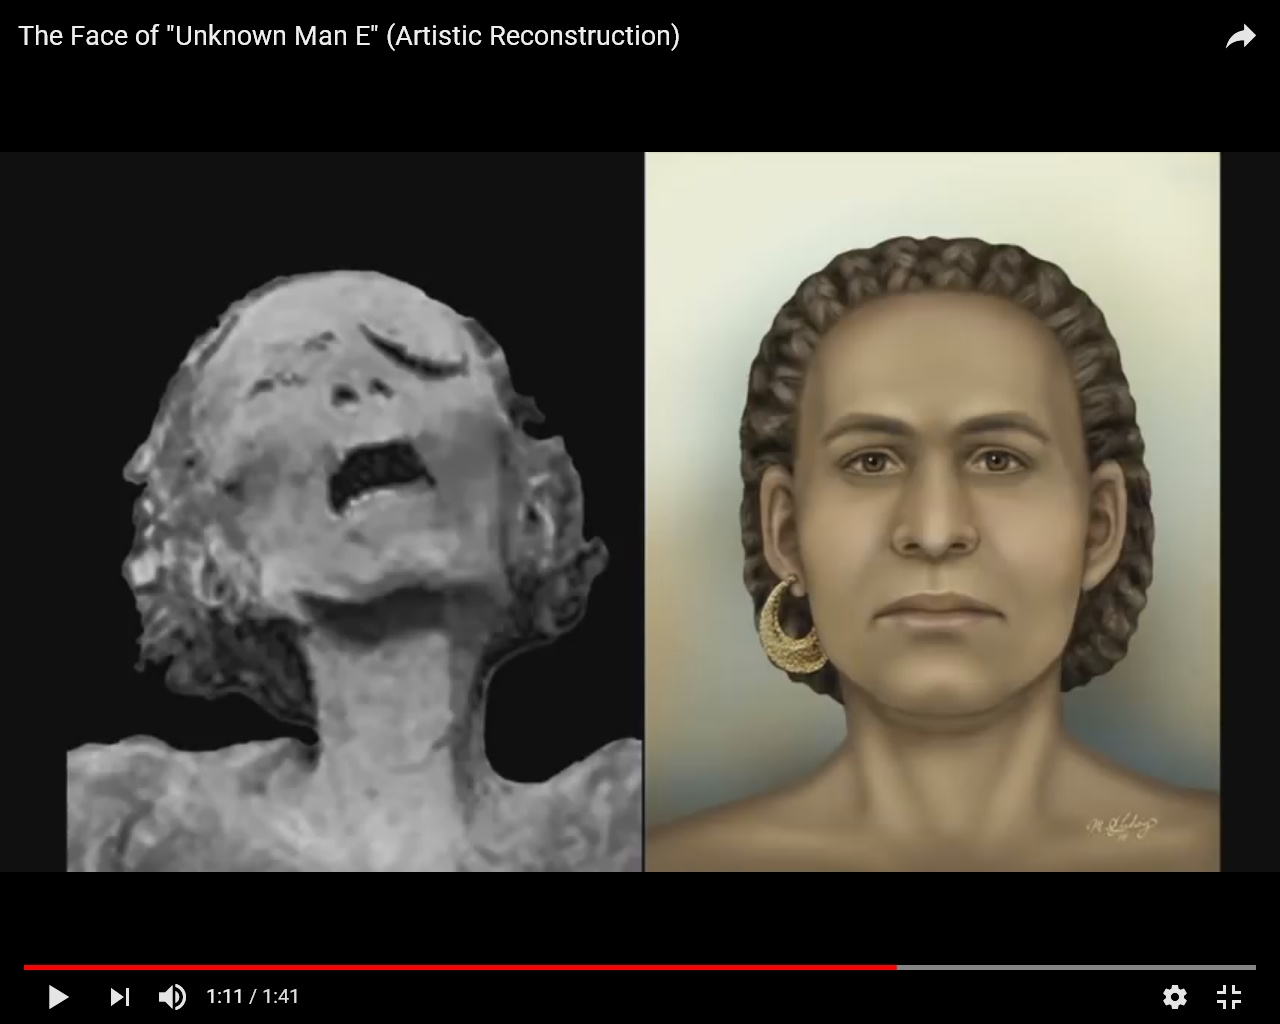 Takto podle počítačové rekonstrukce vypadala tvář muže v době, kdy ještě žil.